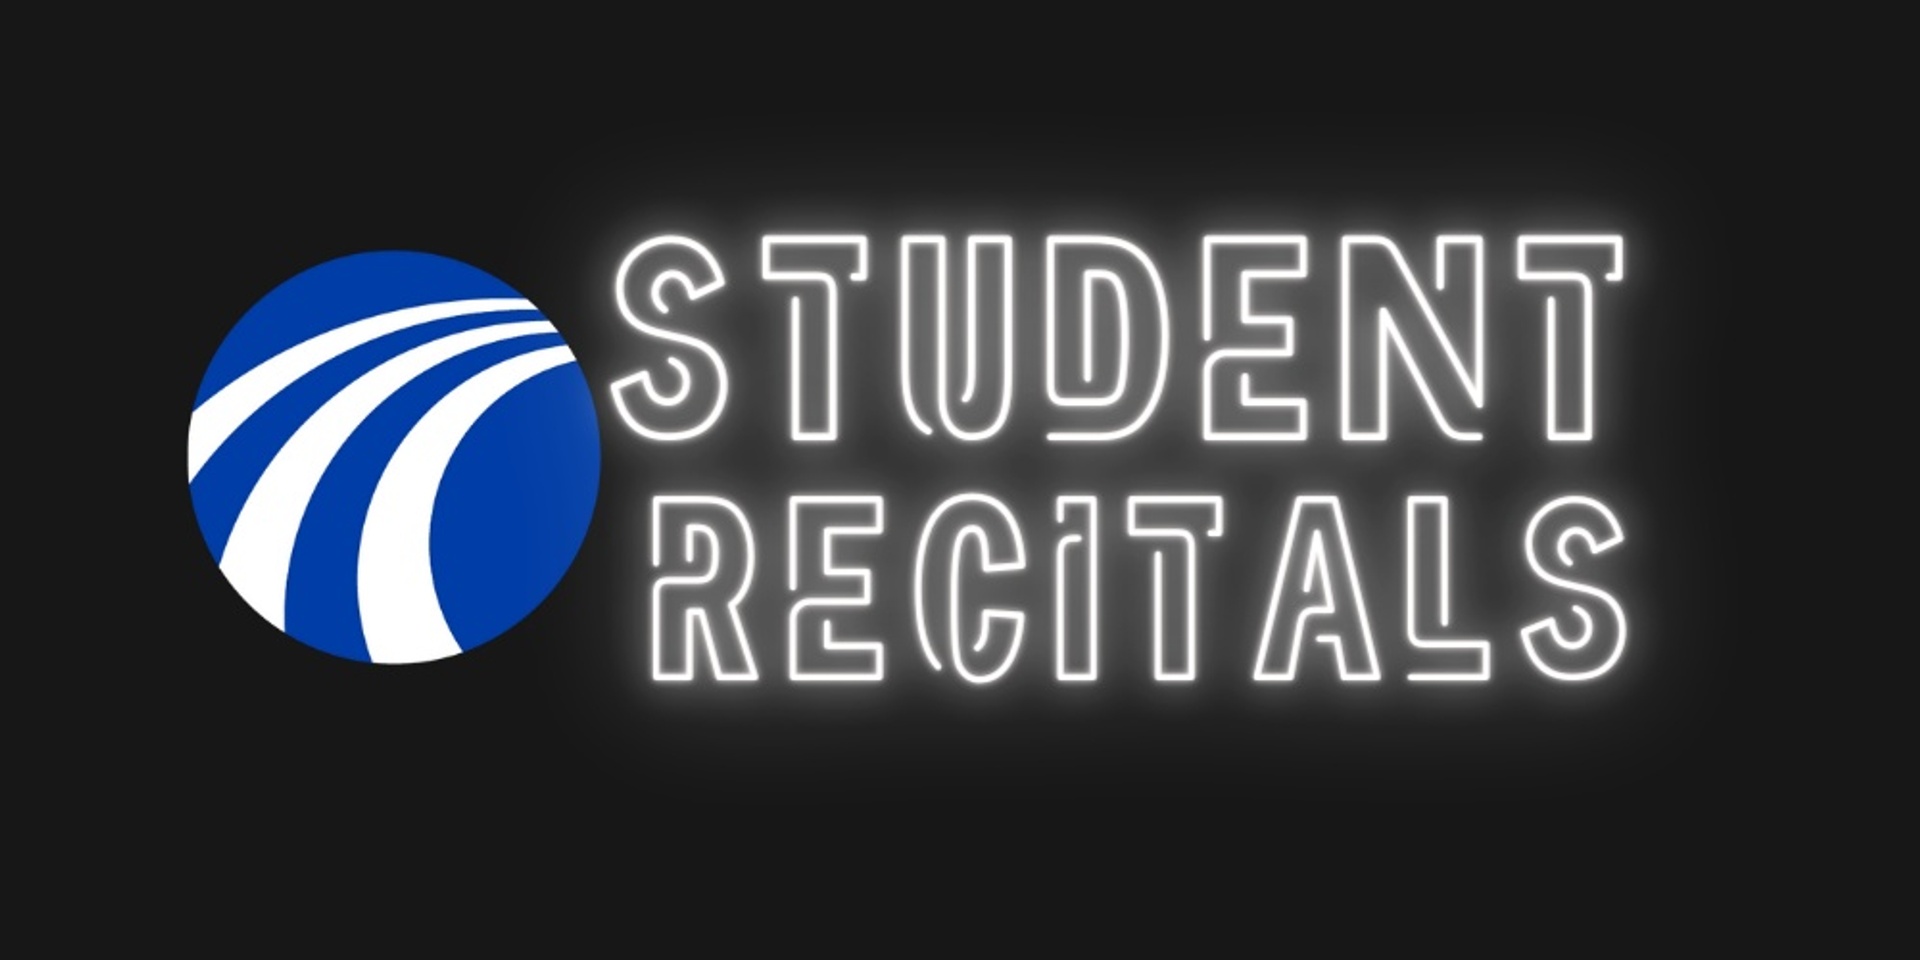 Student Recitals